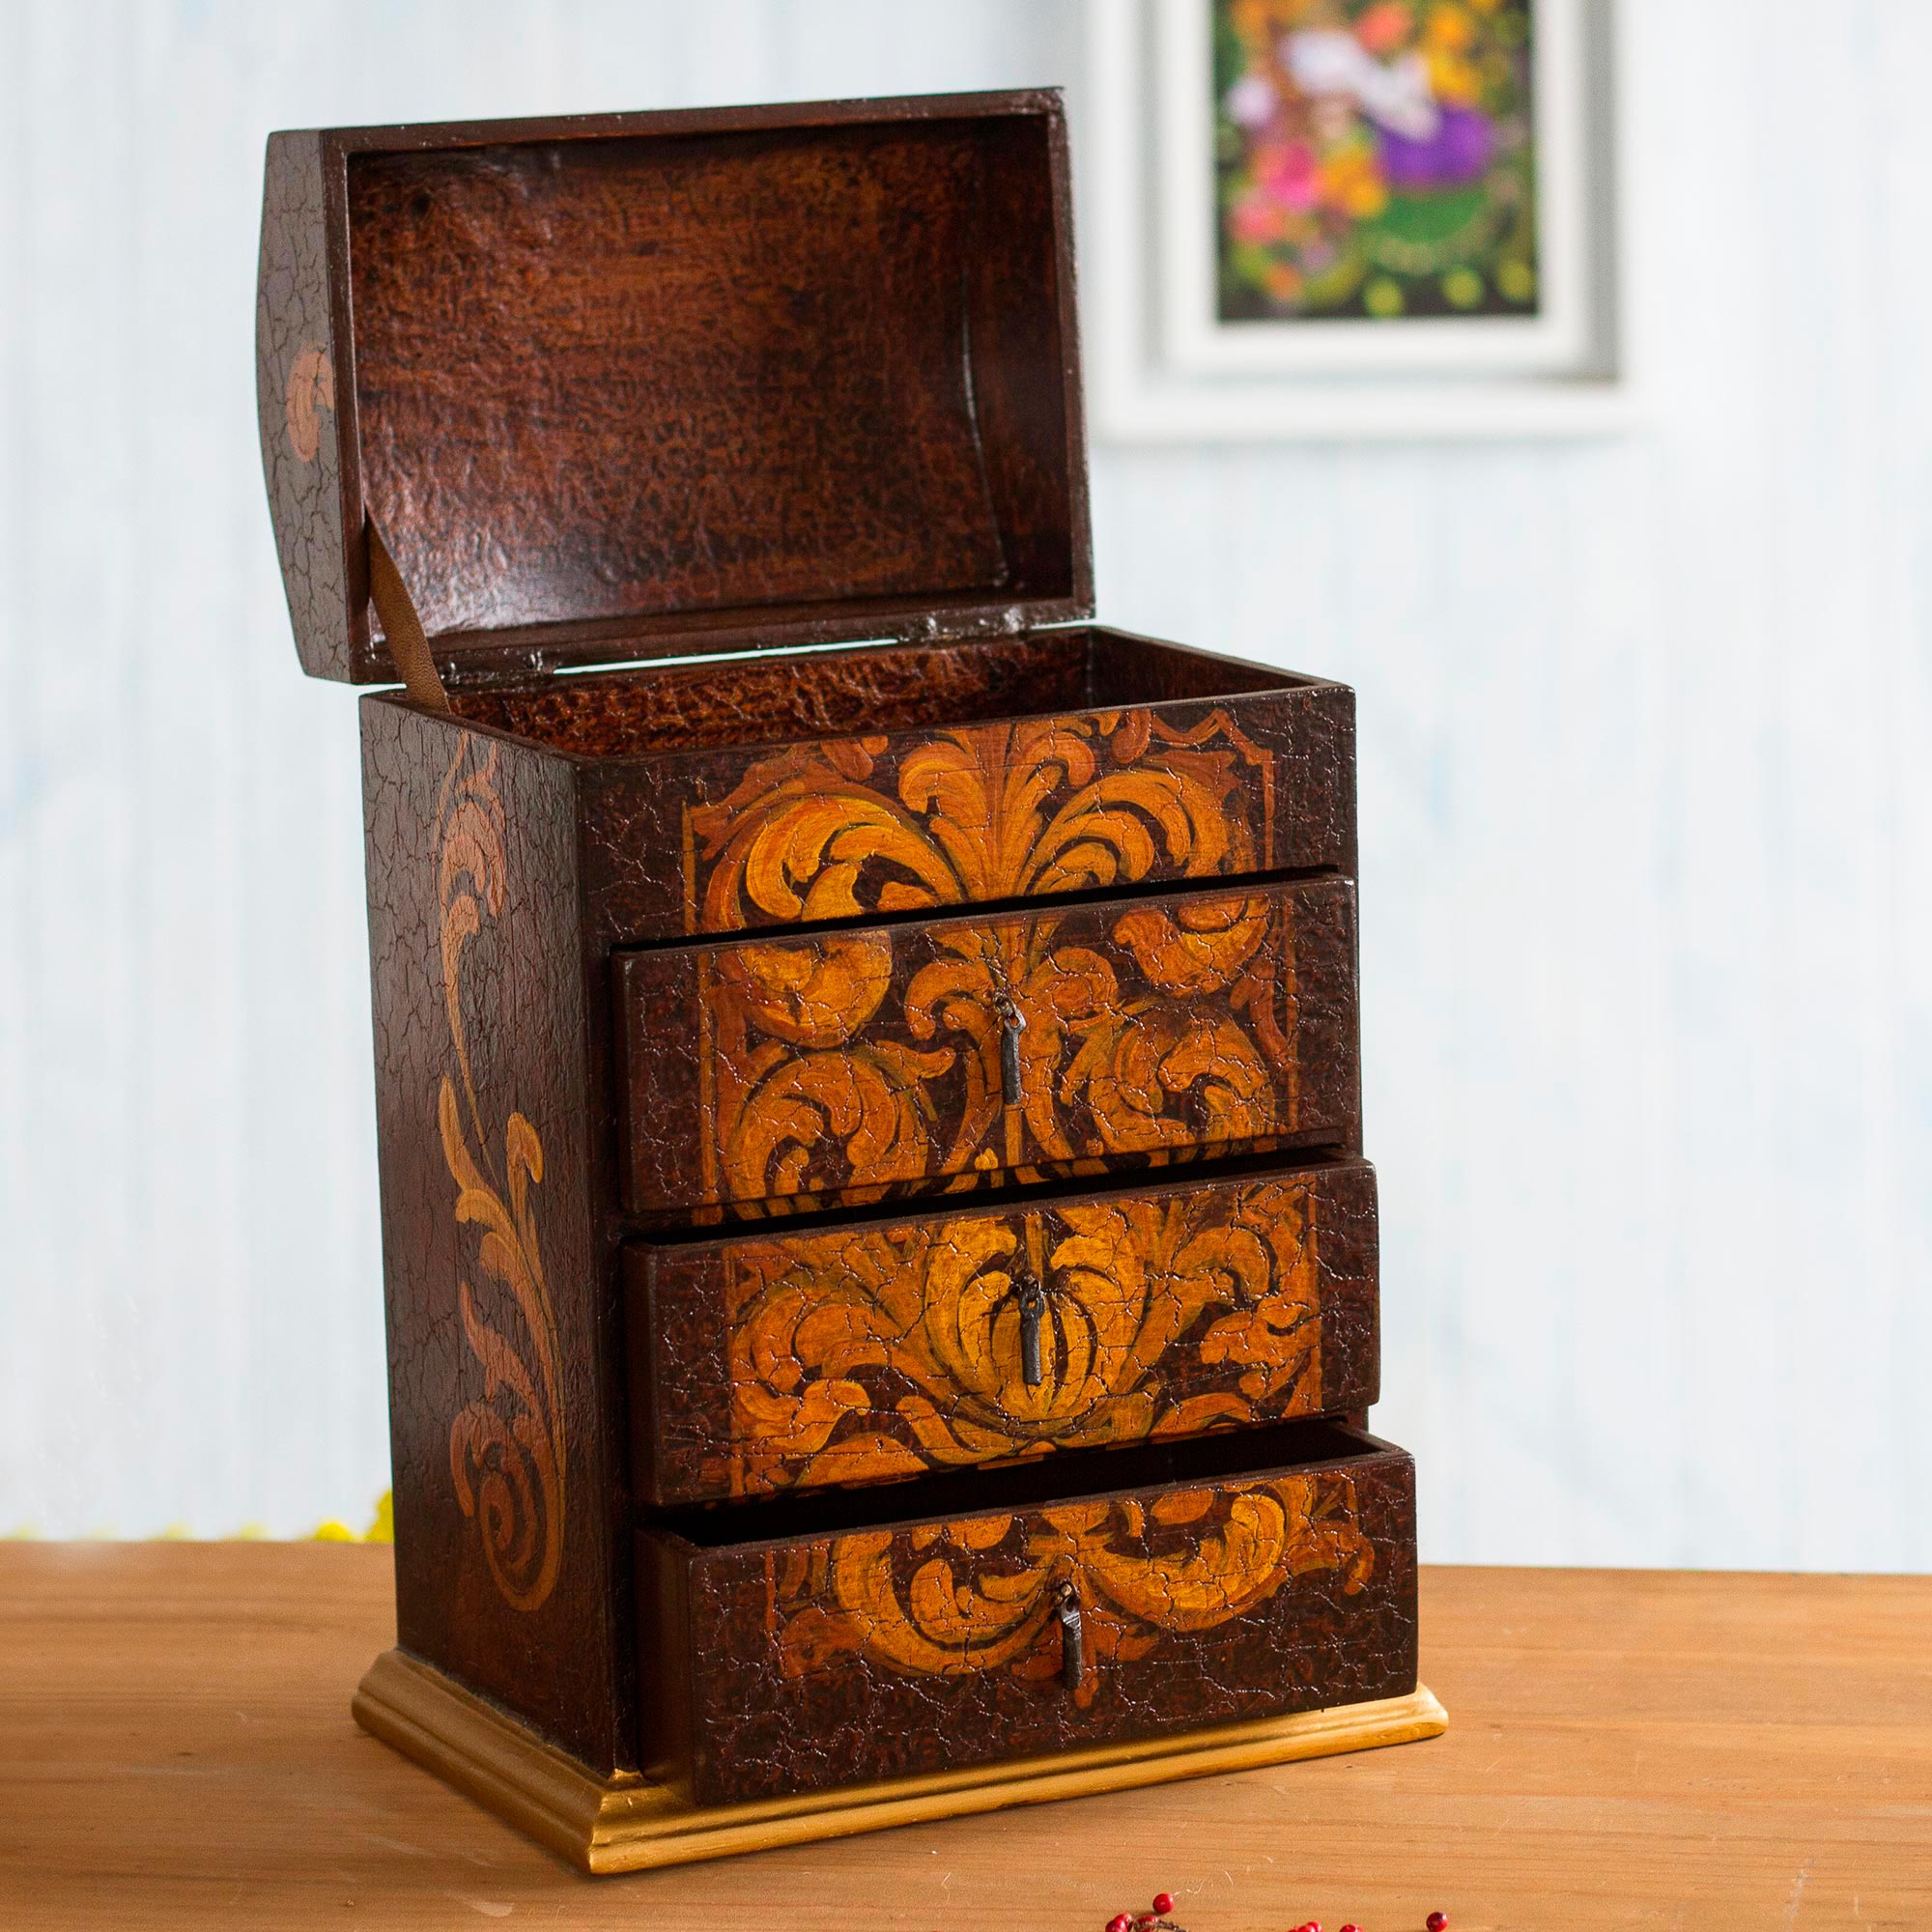 Caja joyero de madera pintado artesanal marron